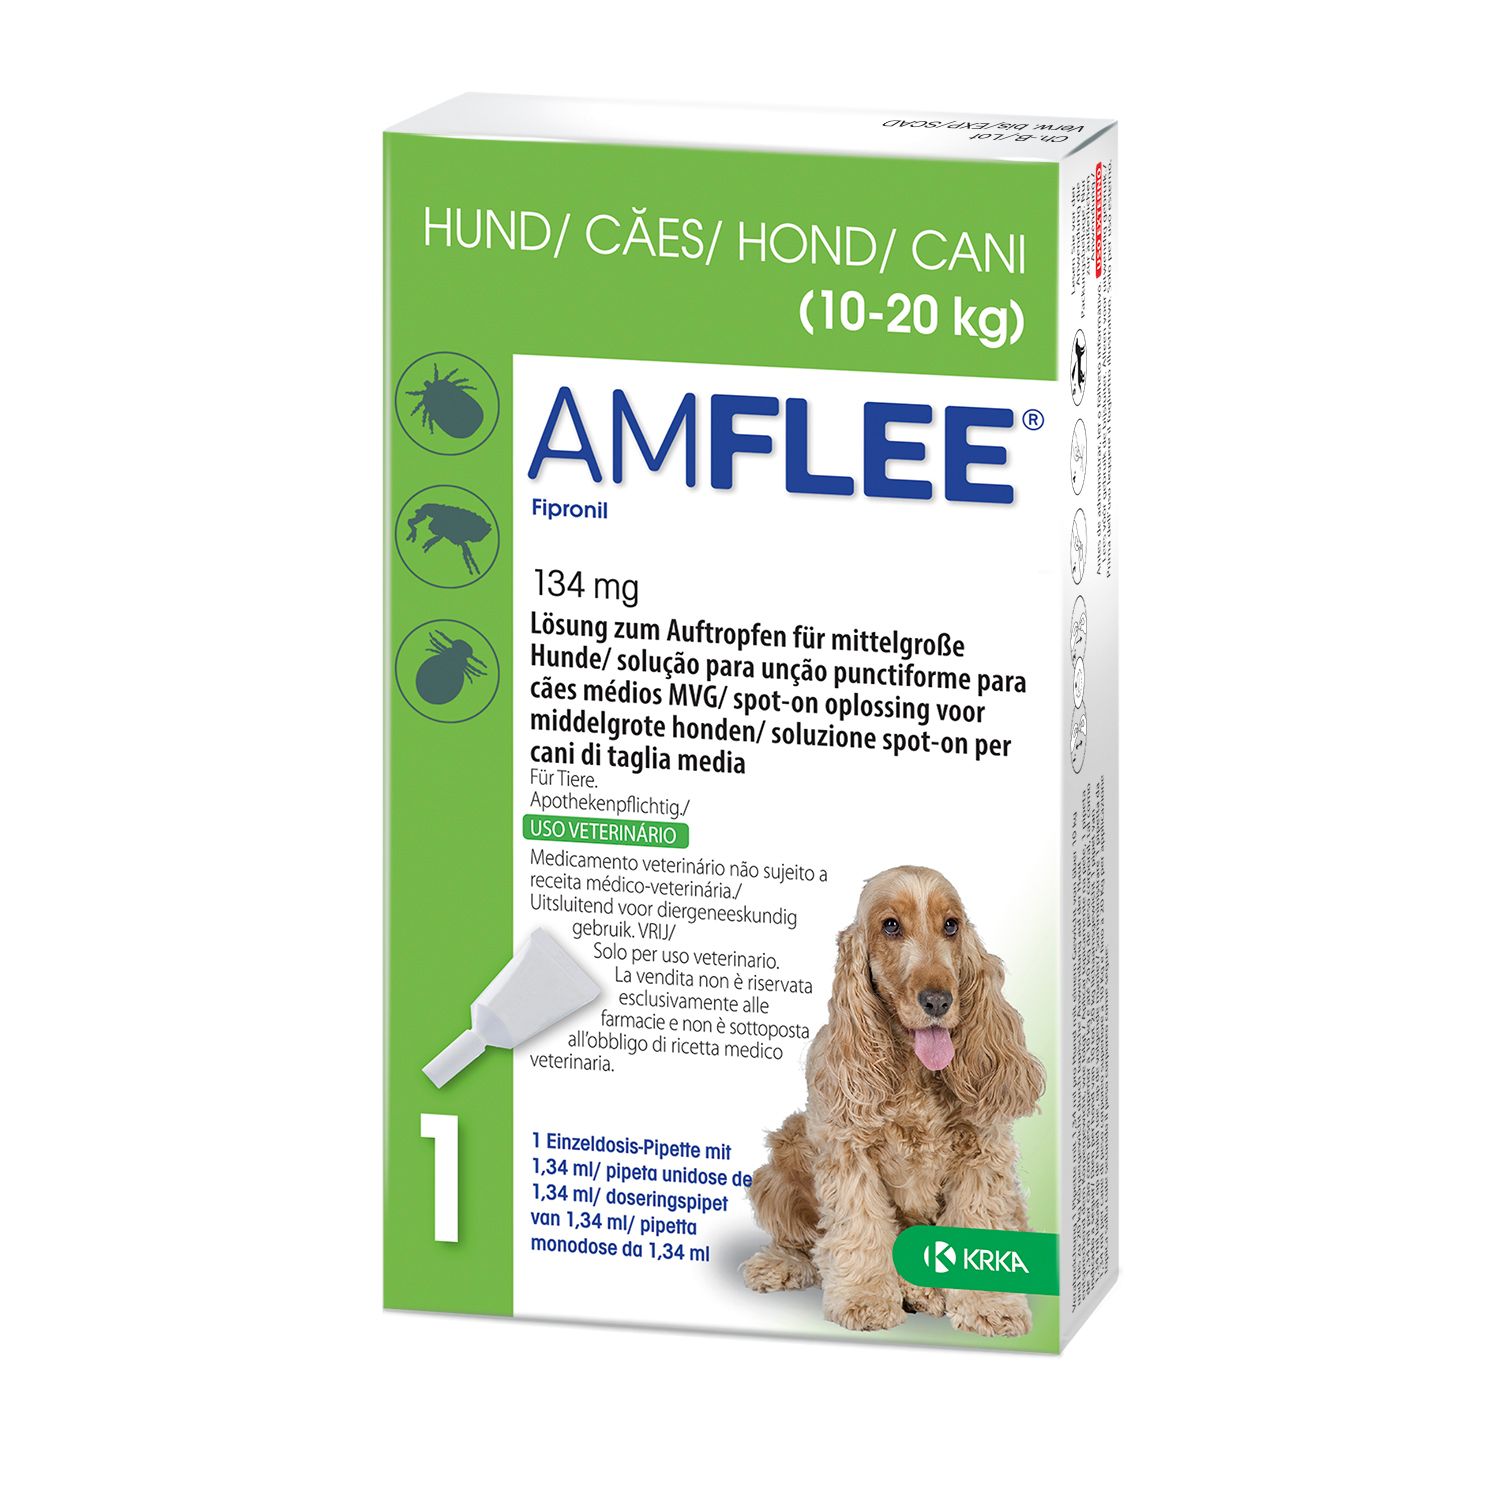 Amflee® 134 mg für mittelgroße Hunde